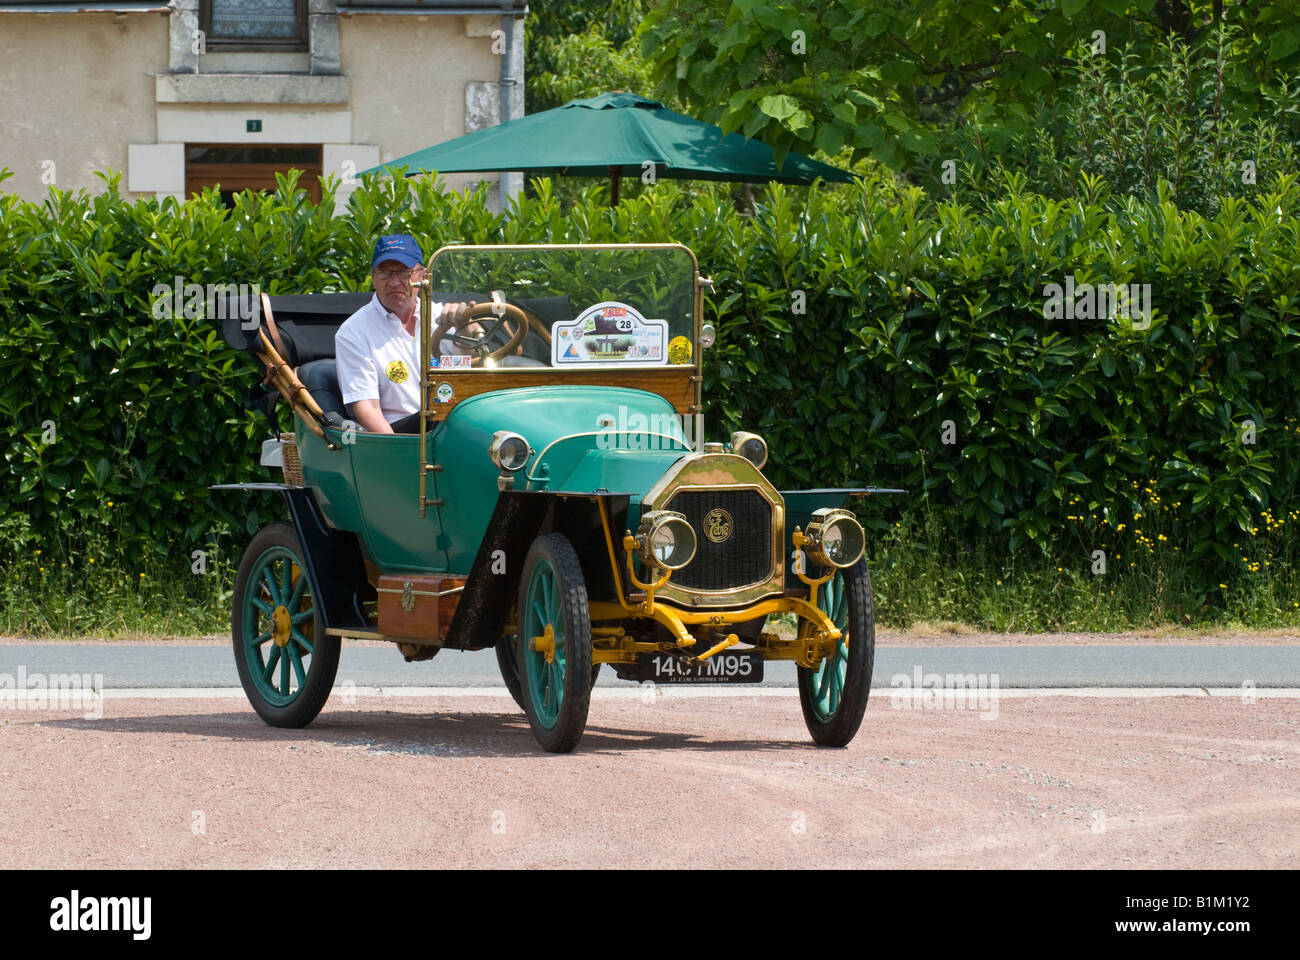 Le zèbre 'vintage' (La moule) automobile - rallye de voitures classiques, la France. Banque D'Images